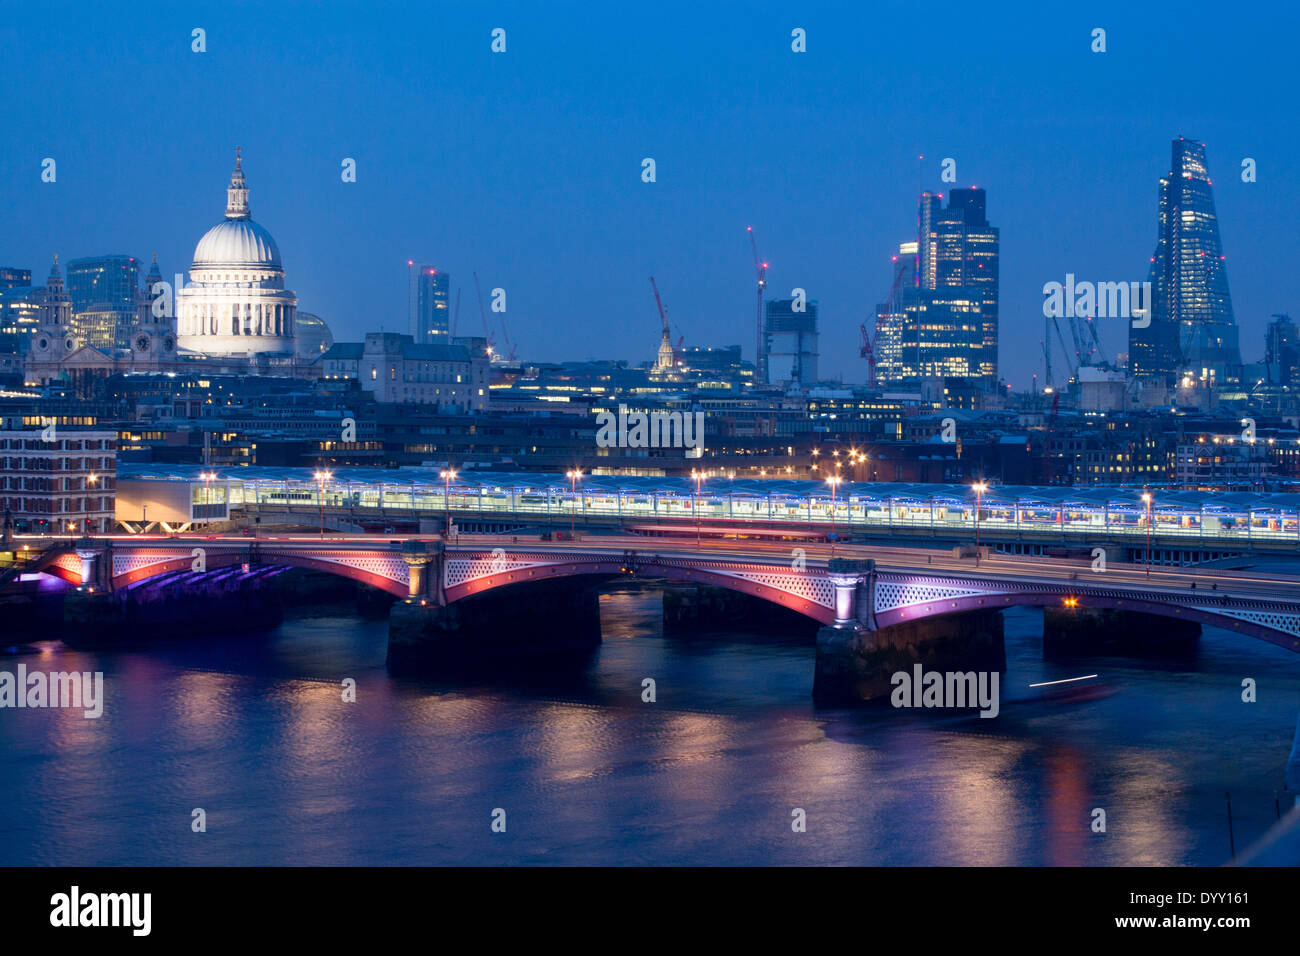 Ville de London Skyline, Blackfriars Bridge et la Tamise de nuit à partir de la Oxo Tower London England UK Banque D'Images